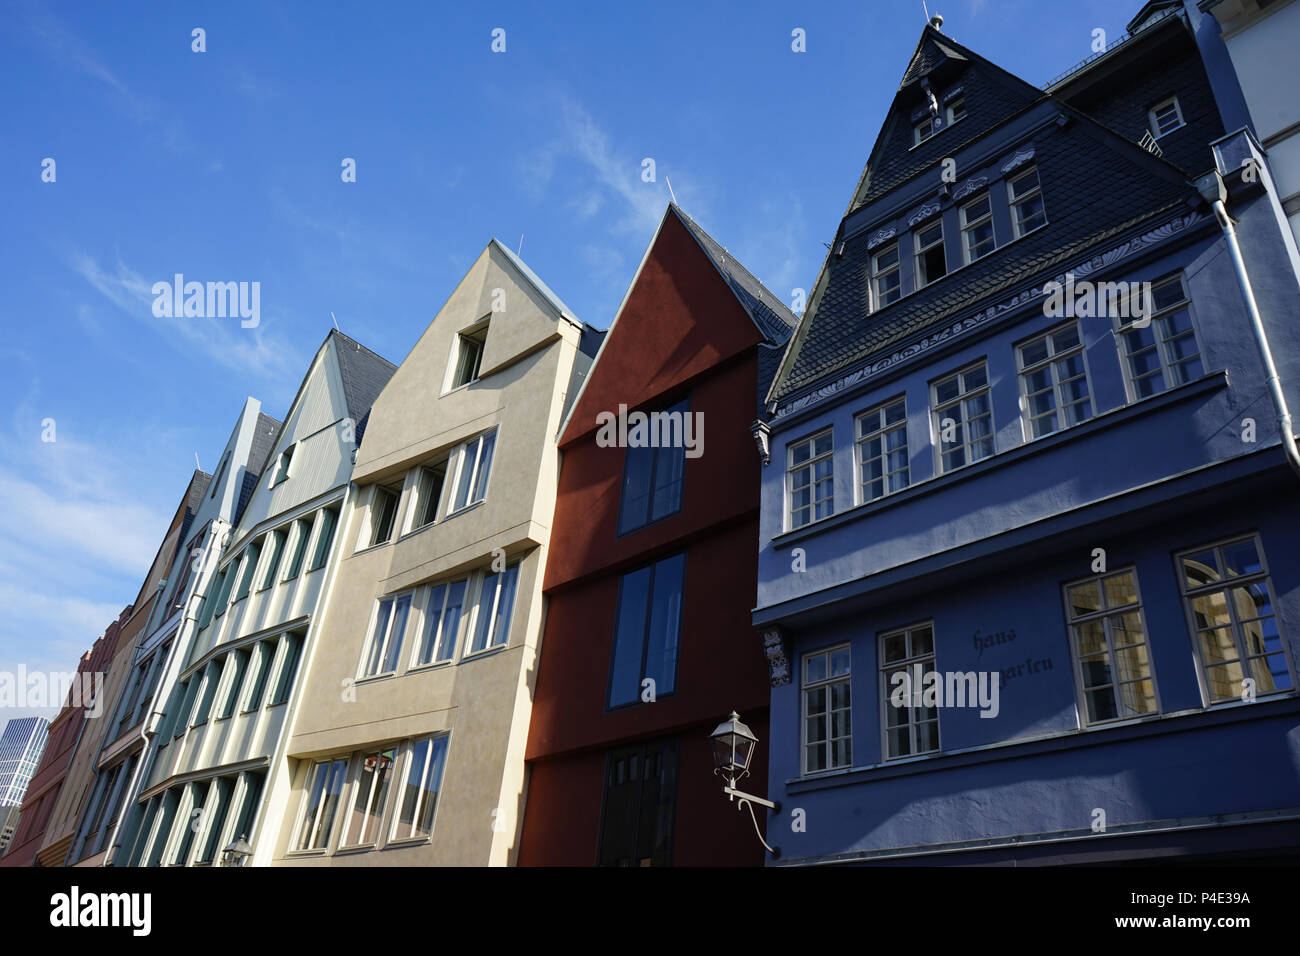 Façades de maisons de la vieille ville nouvelle, Dom-Römer-Projekt, Neue Frankfurter Altstadt, refaire le vieux centre-ville, Frankfurt am Main, Allemagne Banque D'Images